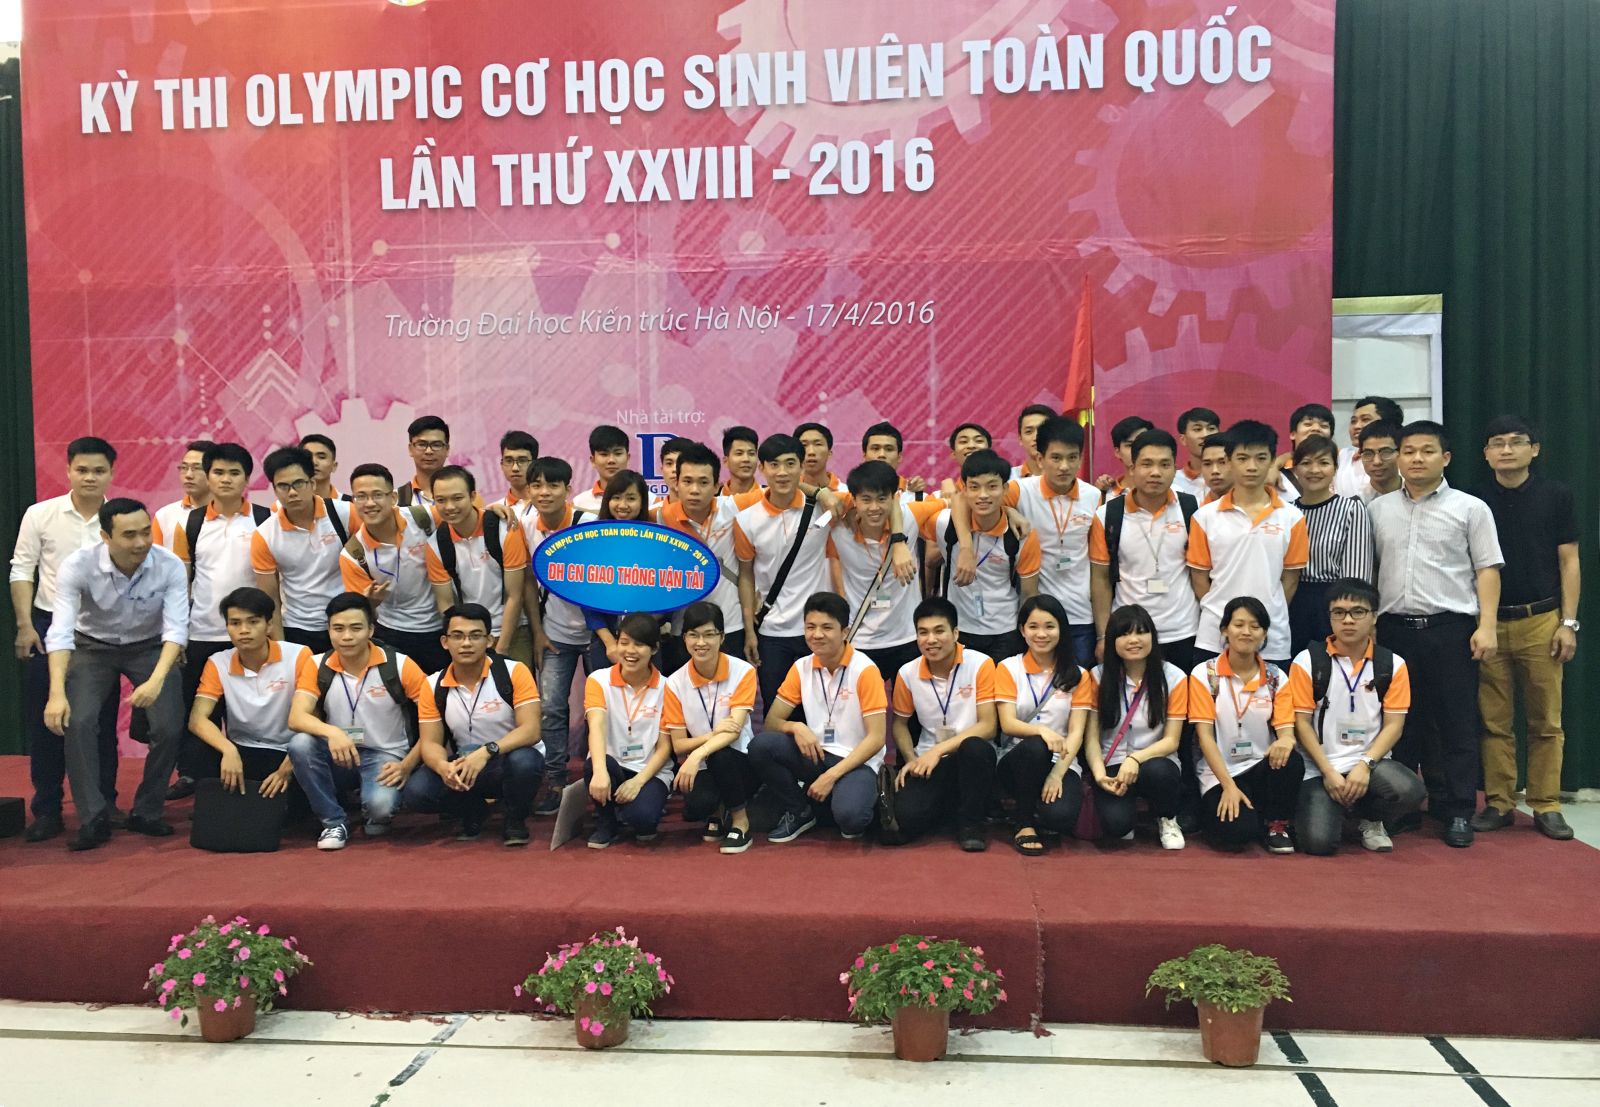 Khai mạc kỳ thi Olympic Cơ học toàn quốc lần thứ XXVIII năm 2016 khu vực phía Bắc